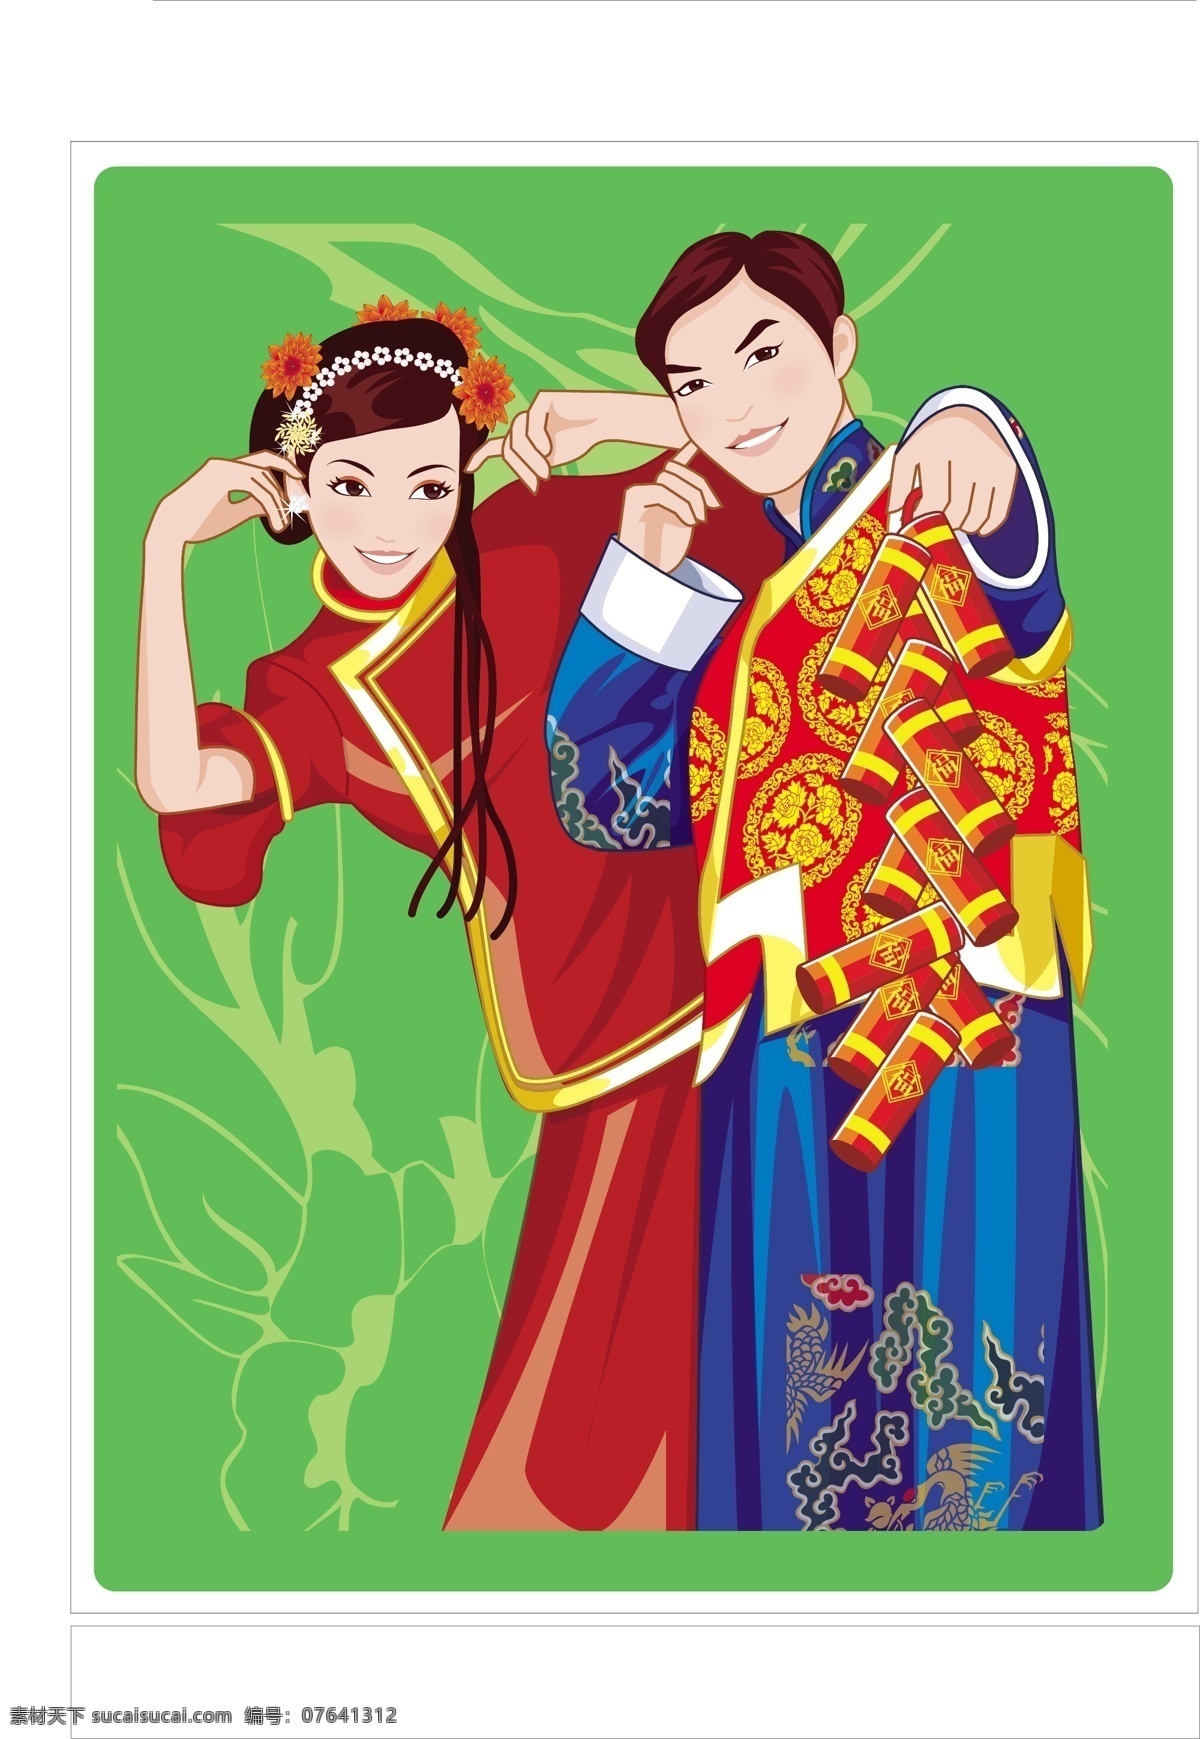 中国 传统 新婚 夫妇 矢量图 标识cdr 环保cdr 卡通环保 矢量素材 标签标识 其他矢量图